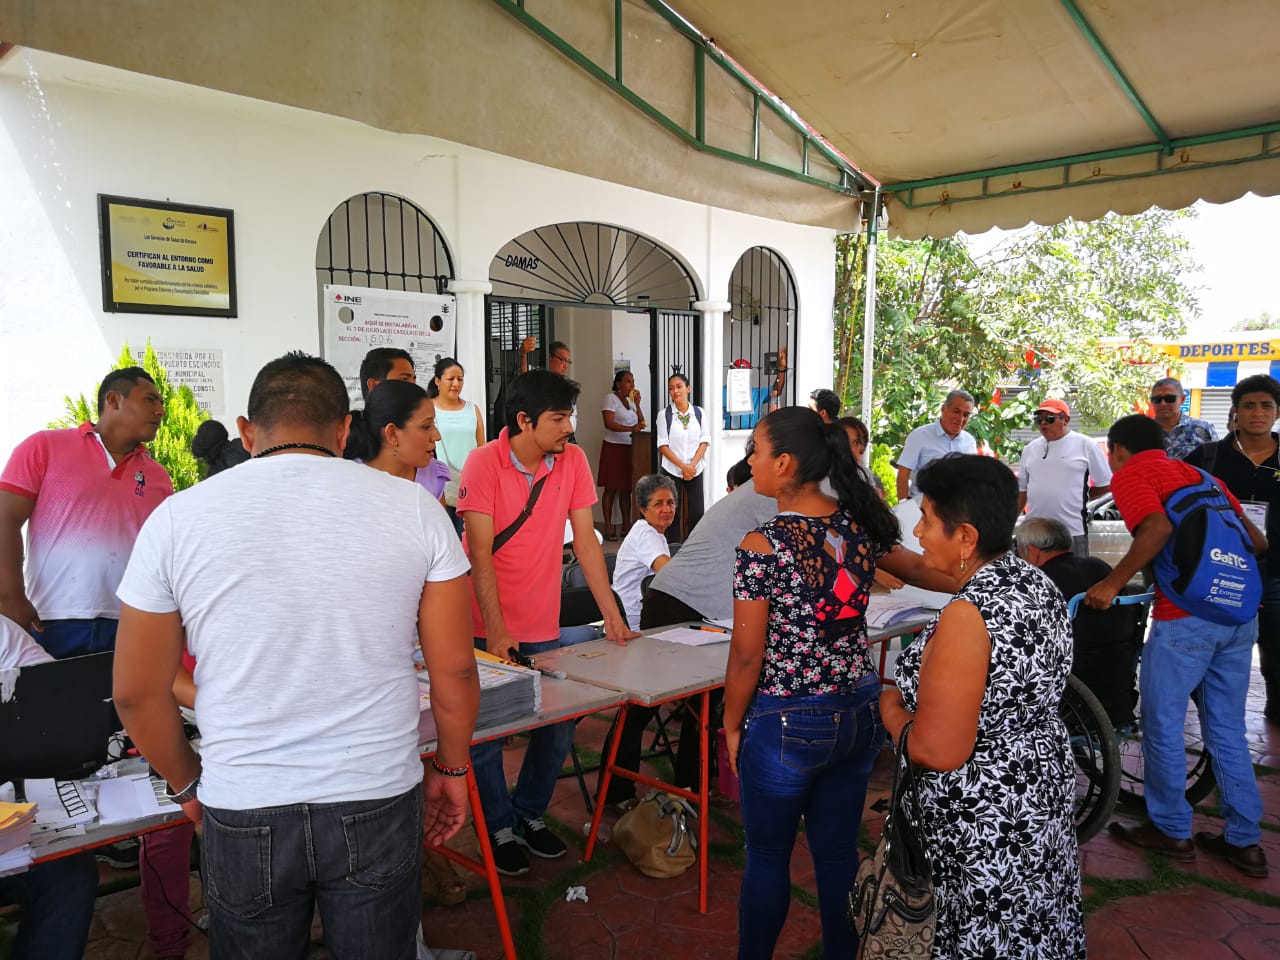 Casillas especiales en Puerto Escondido, Oaxaca se abarrotan | El Imparcial de Oaxaca